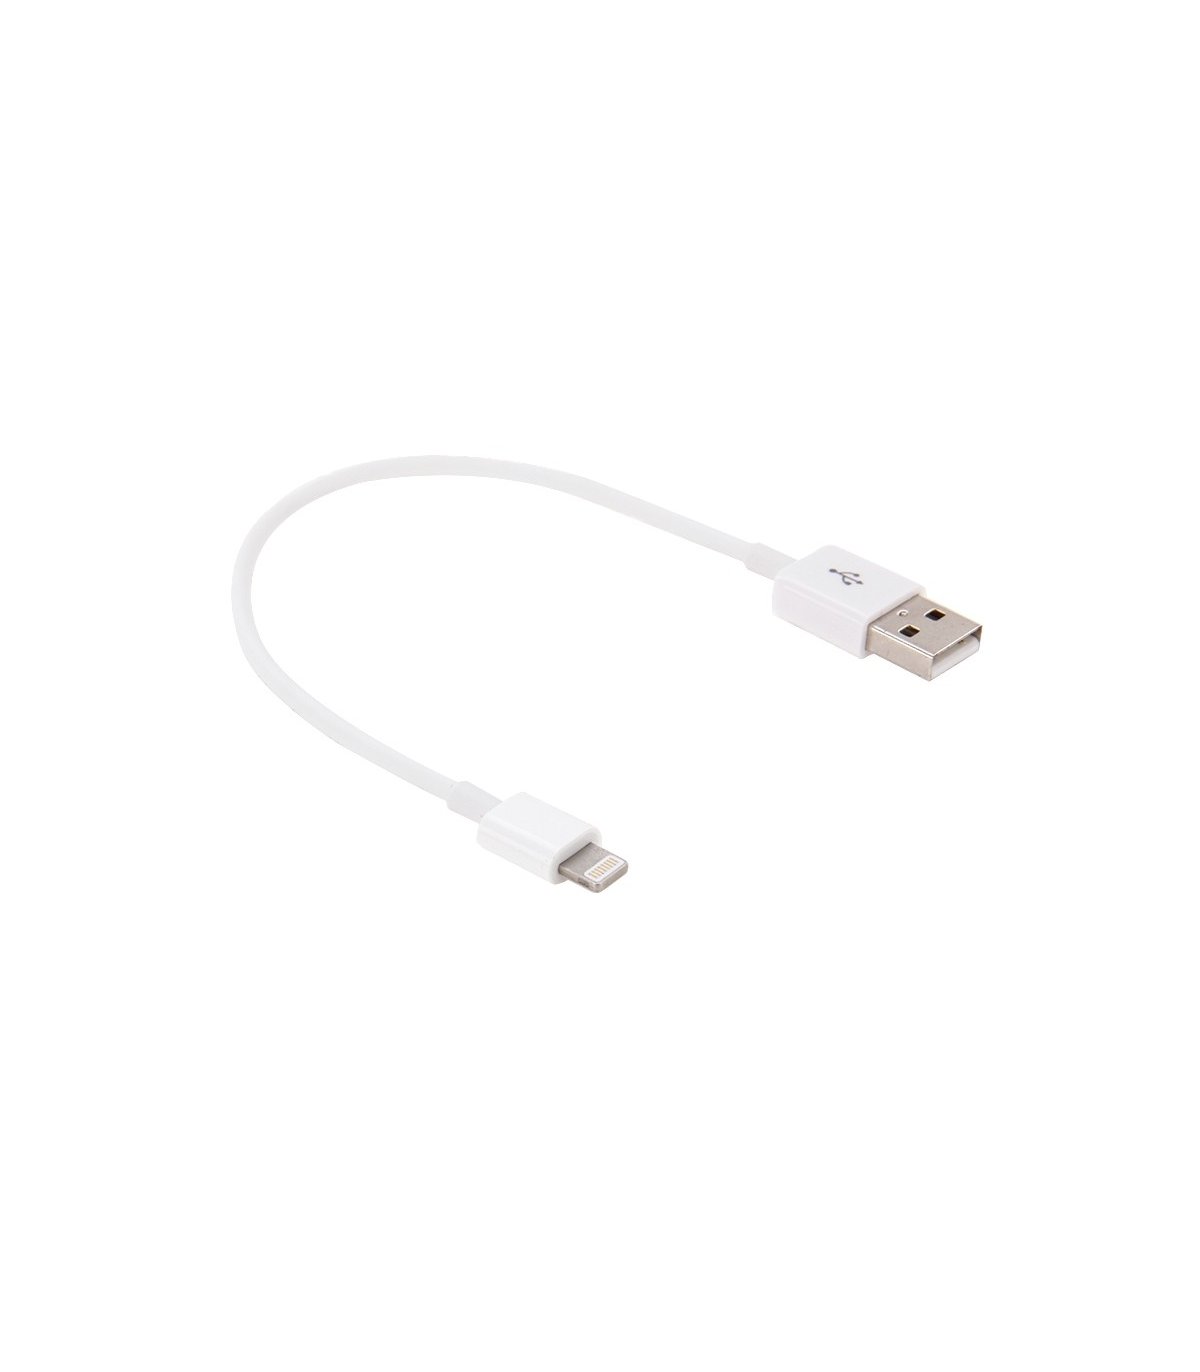 USB kabel til Apple iPhone / iPad / iPod (flere varianter) Farve / længde Hvid Gummi - 30 cm (2.4A)